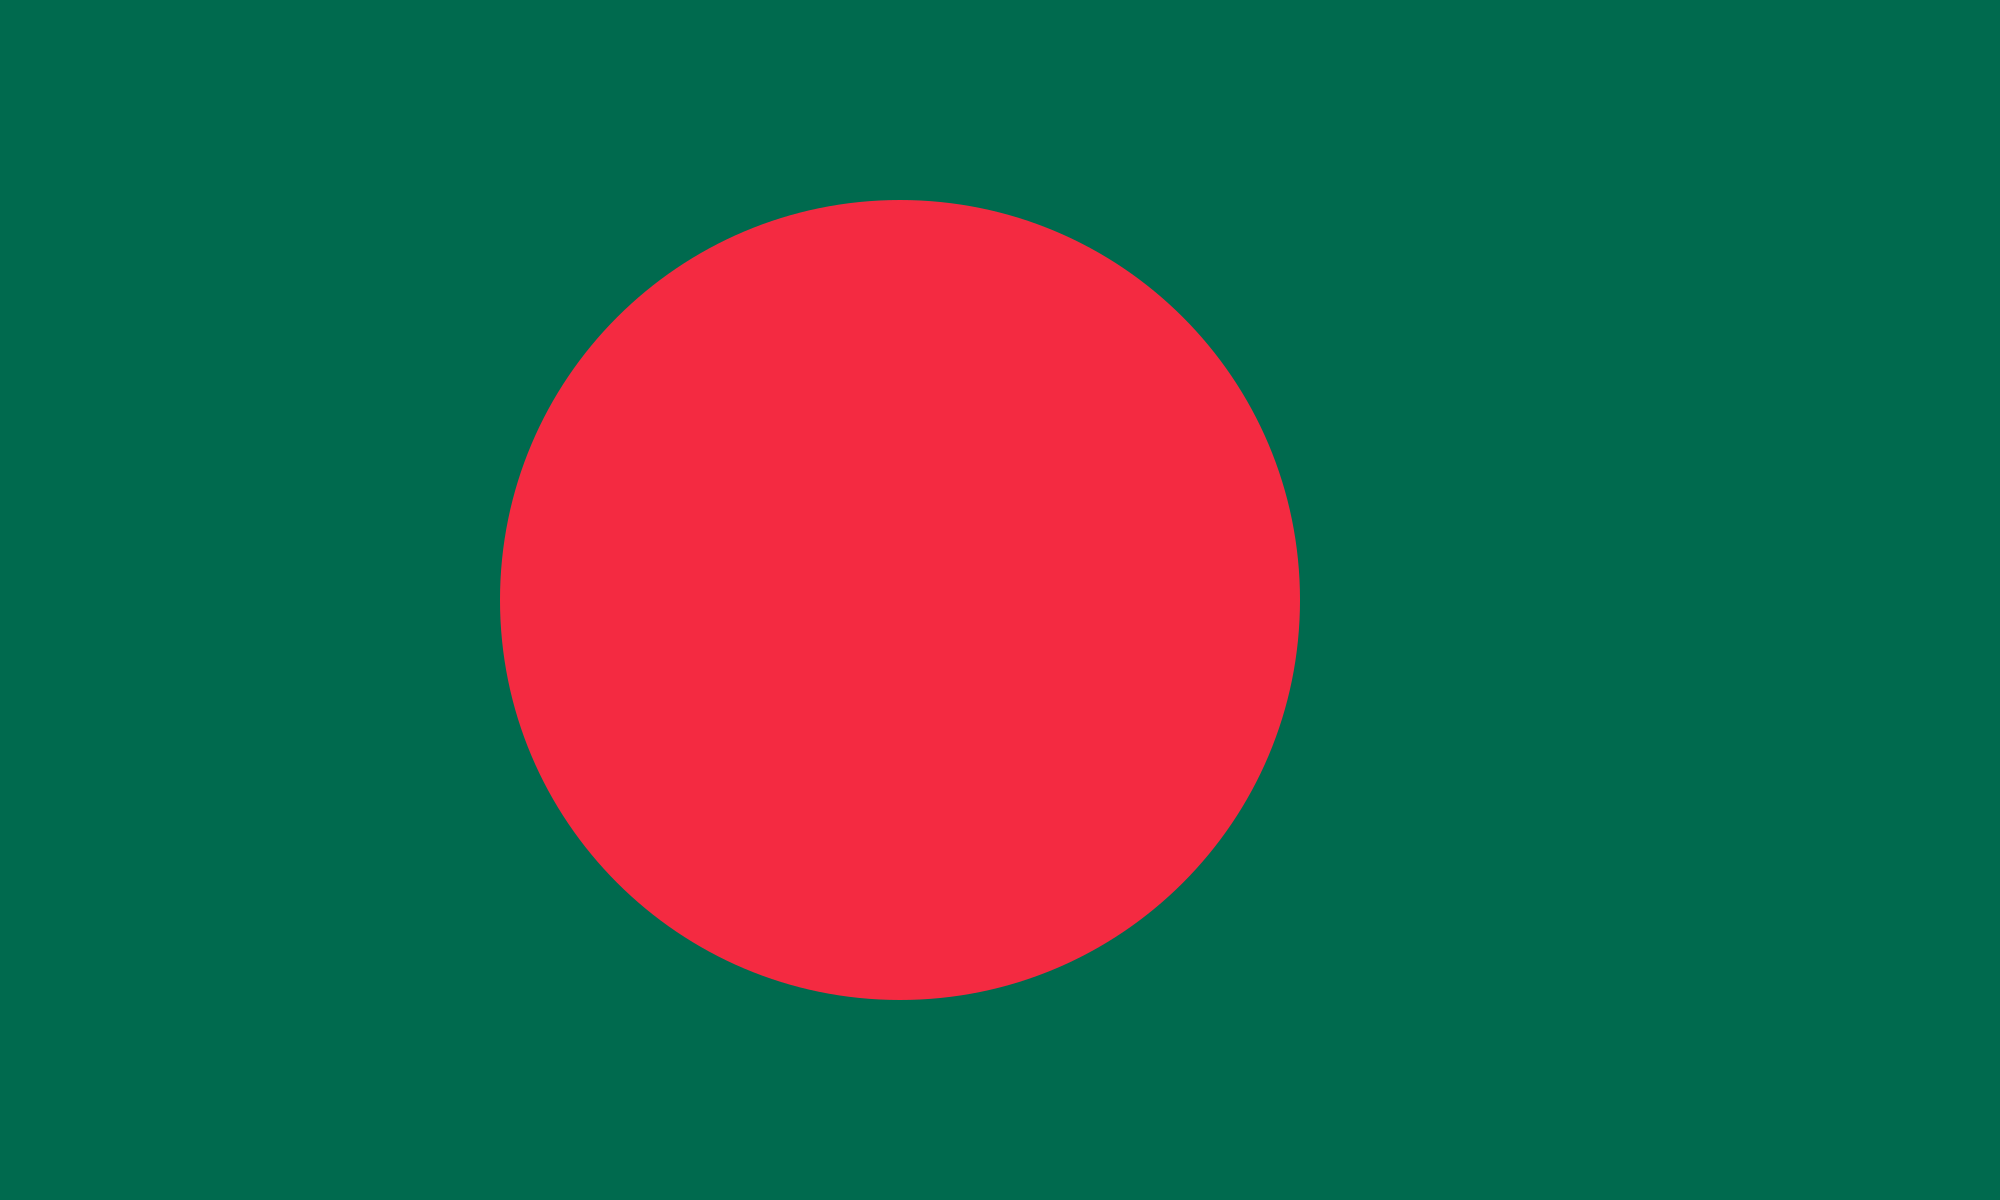 Bangladesh National flag